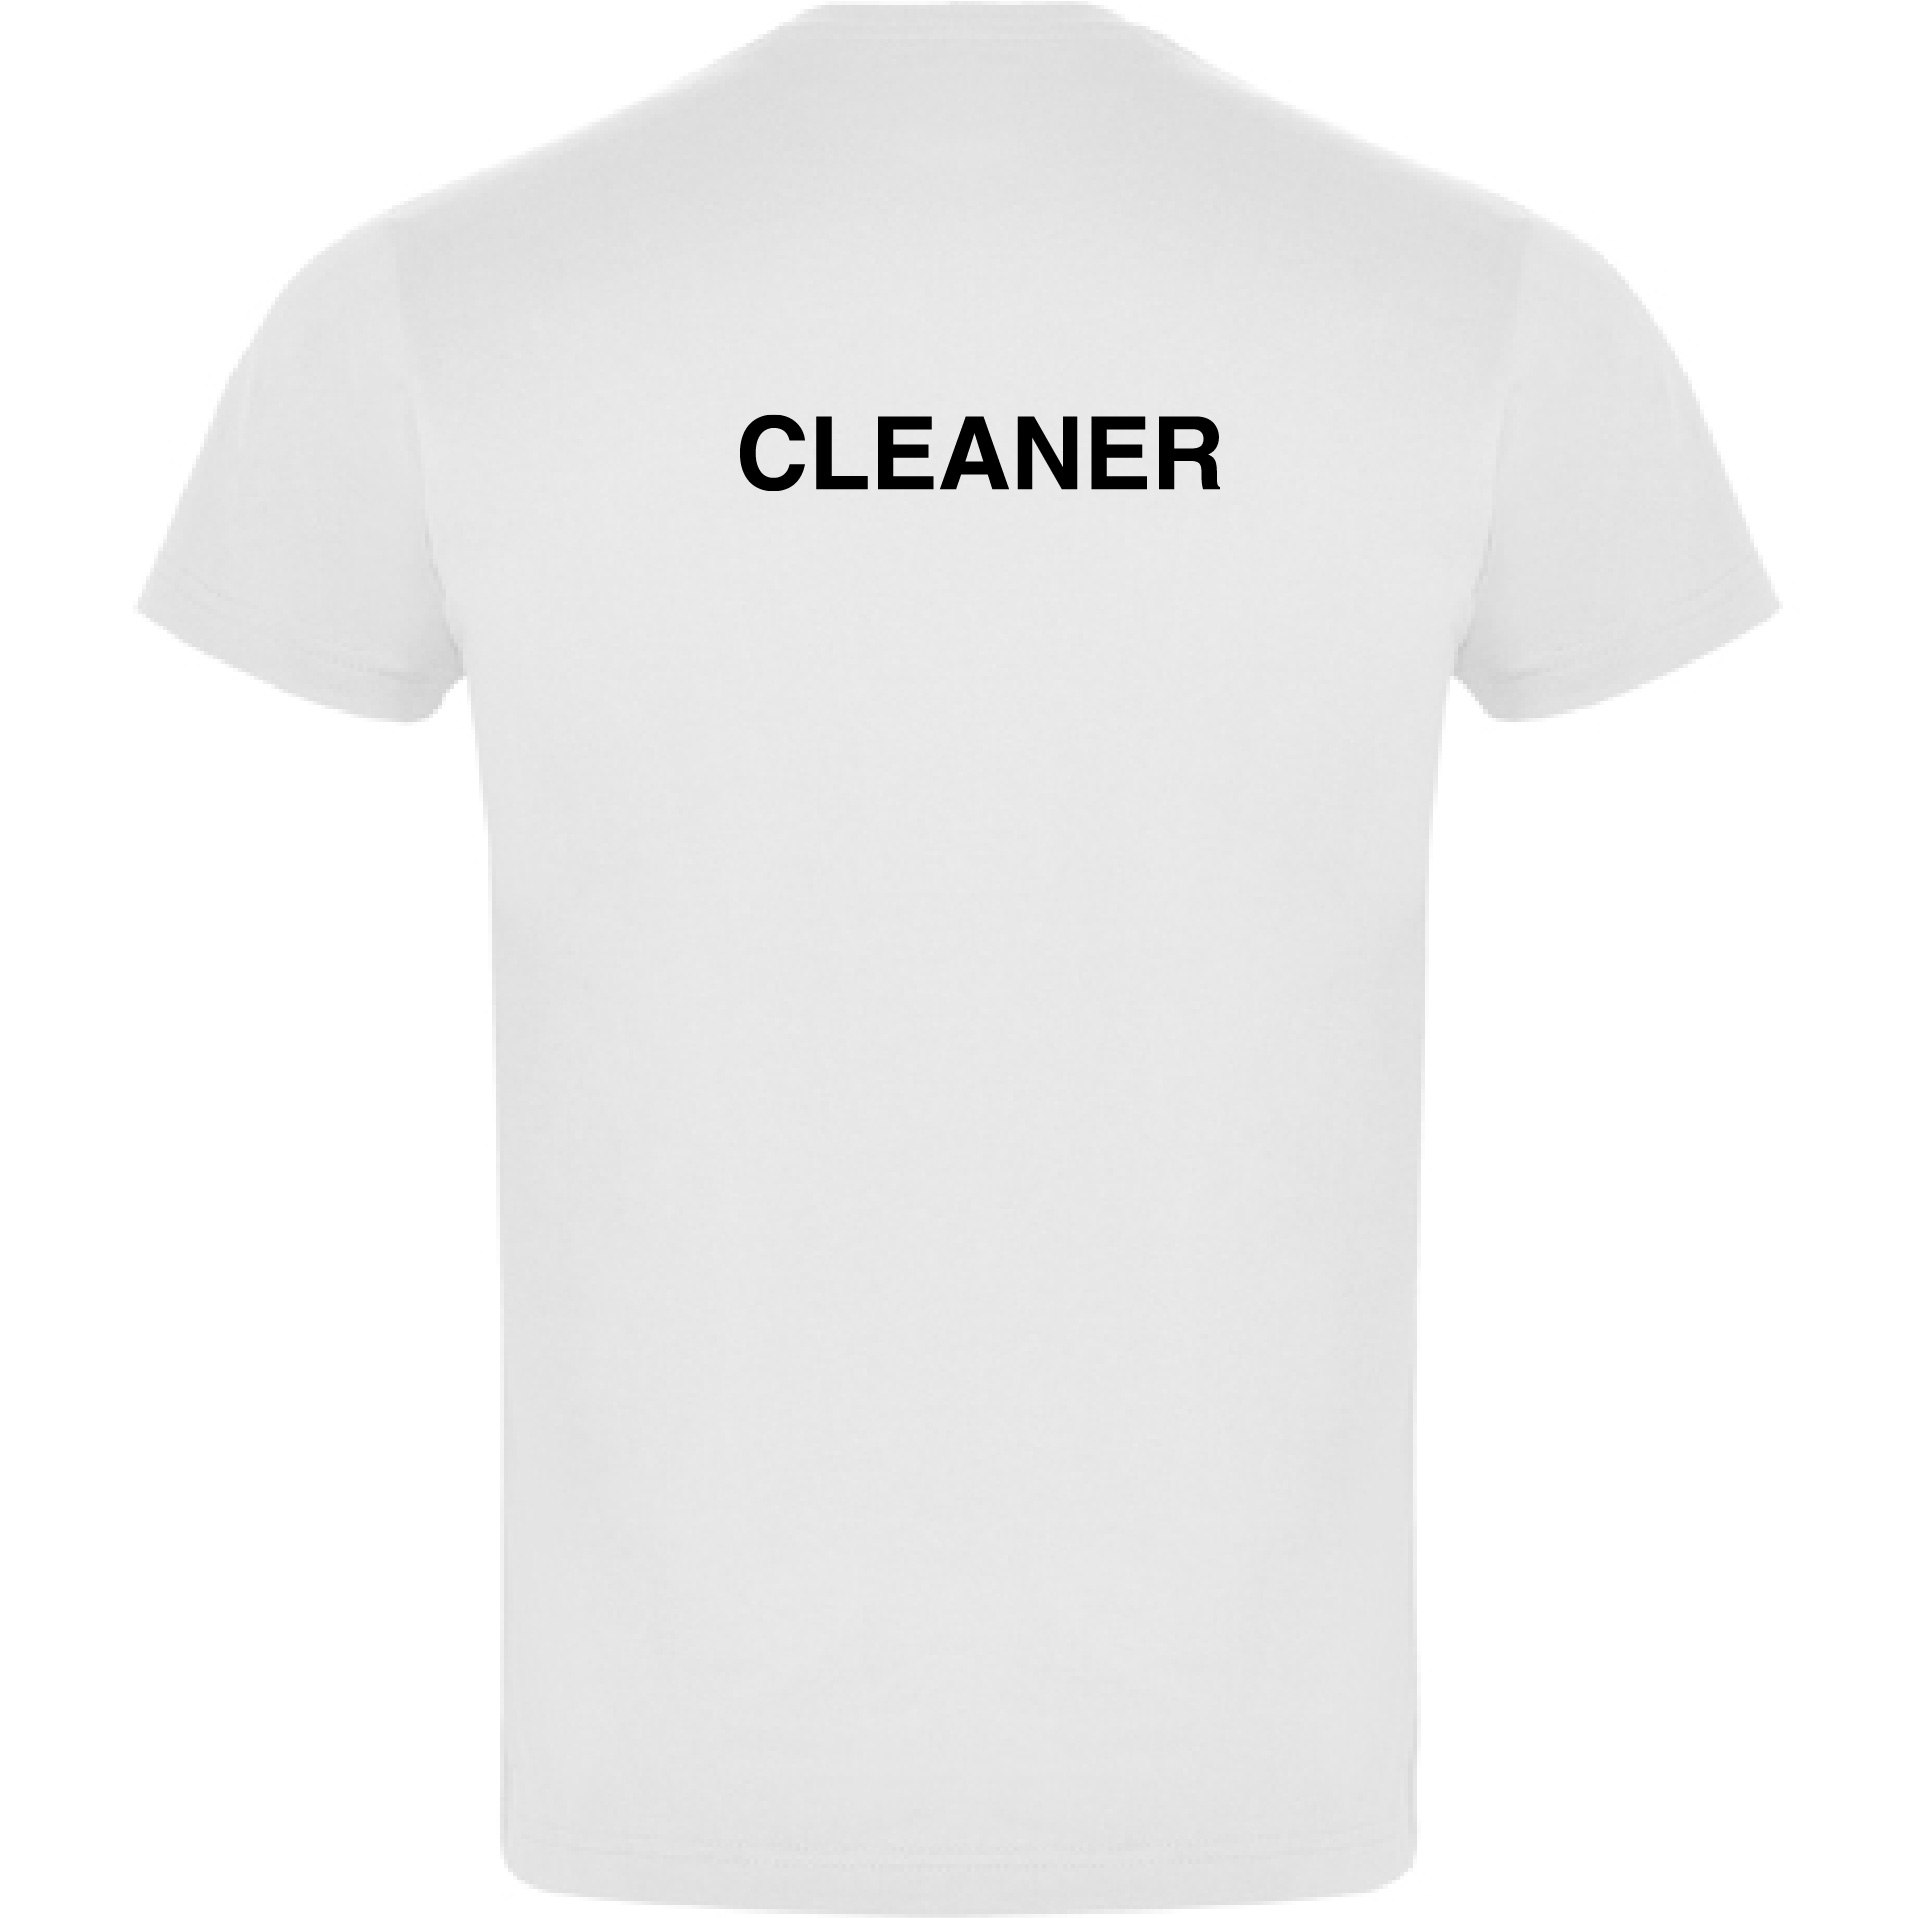 638017878431316466_t-shirt_cleaner_front_white.jpg